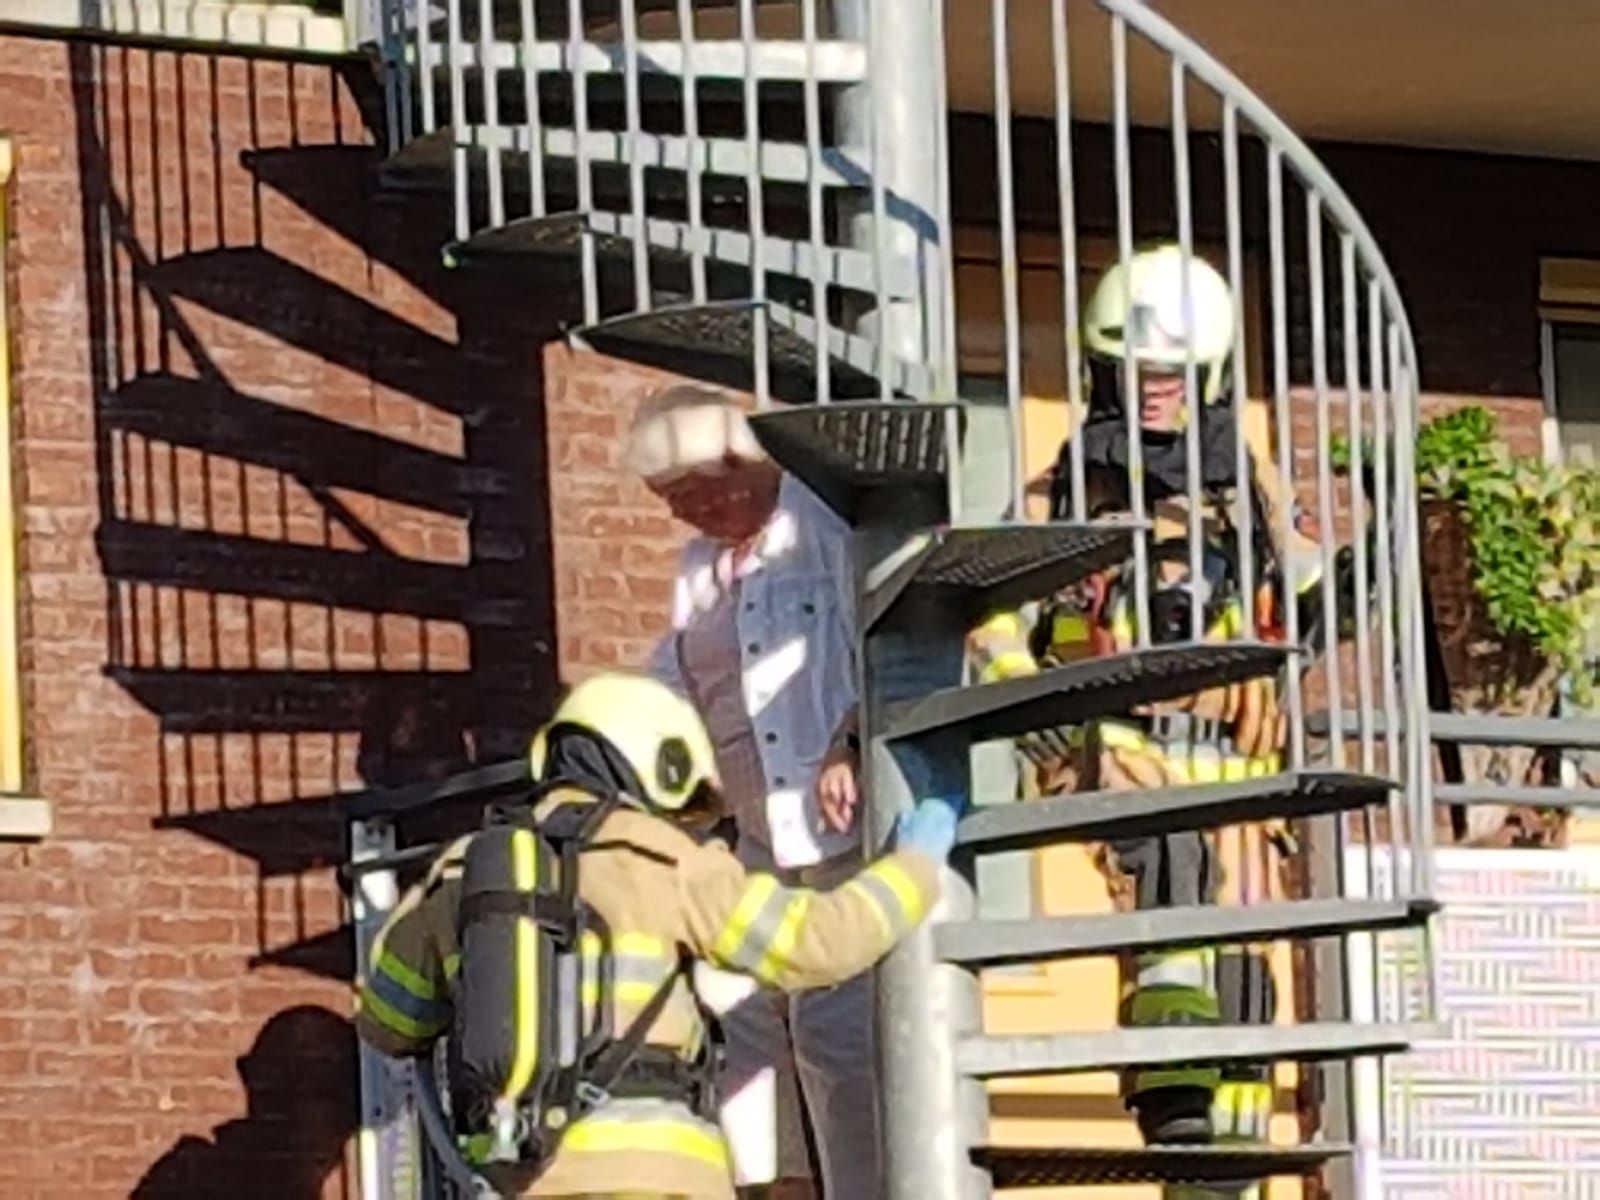 oude dame wordt geëvacueerd door brandweer via brandtrap